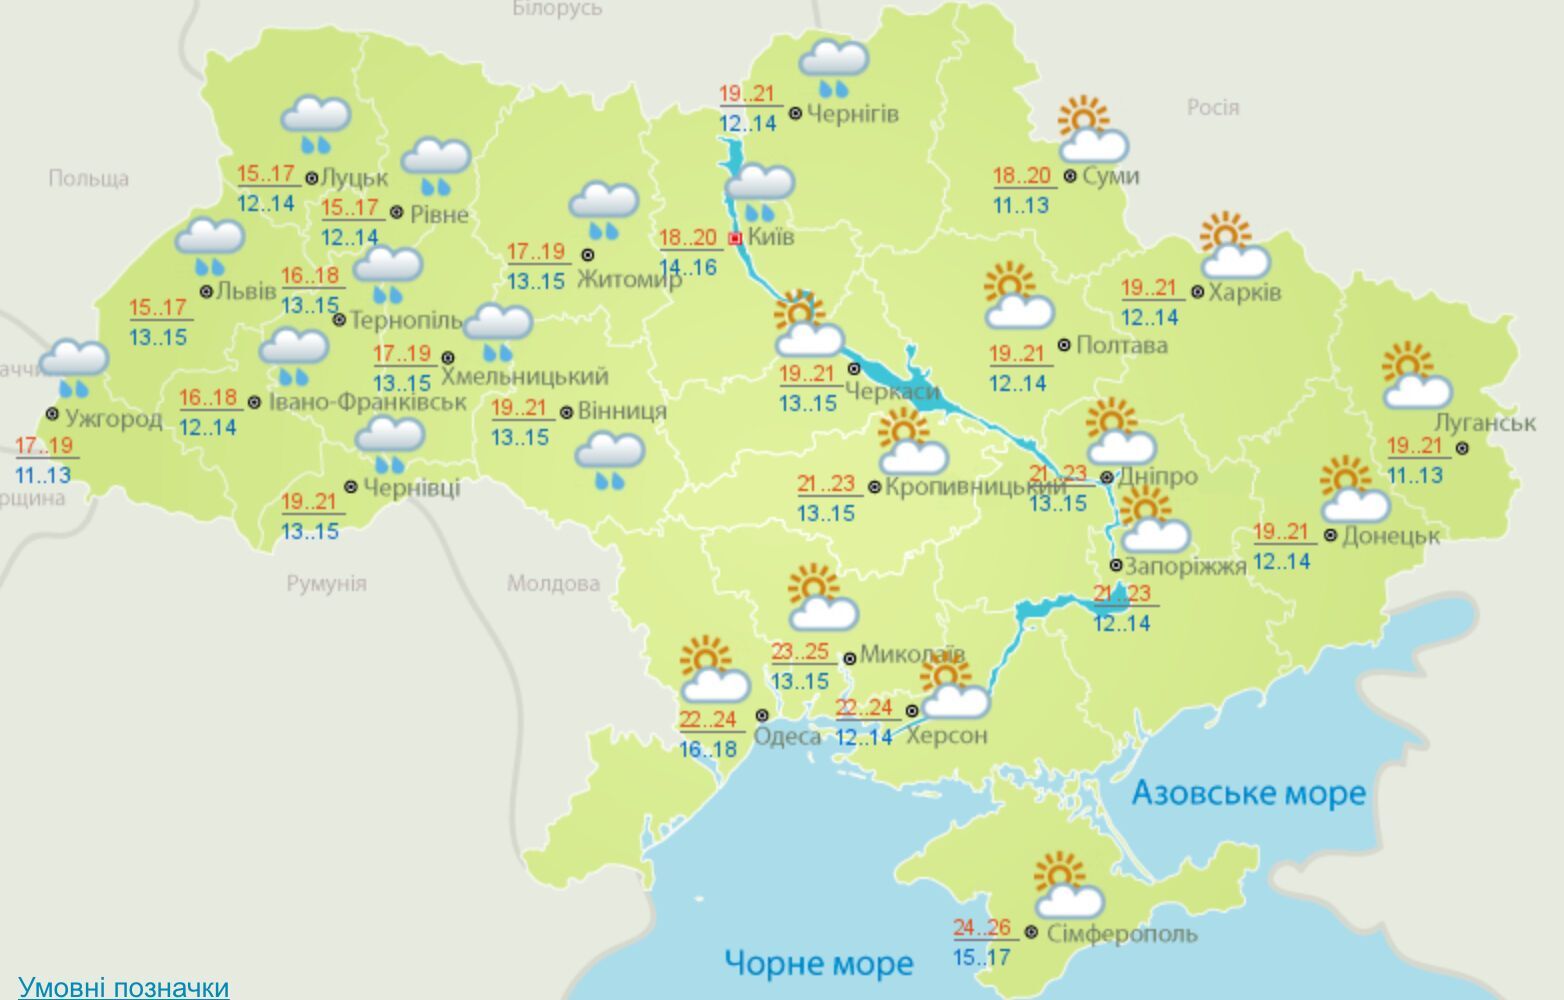 Октябрь в Украине начнется с дождей: синоптики дали прогноз погоды на месяц